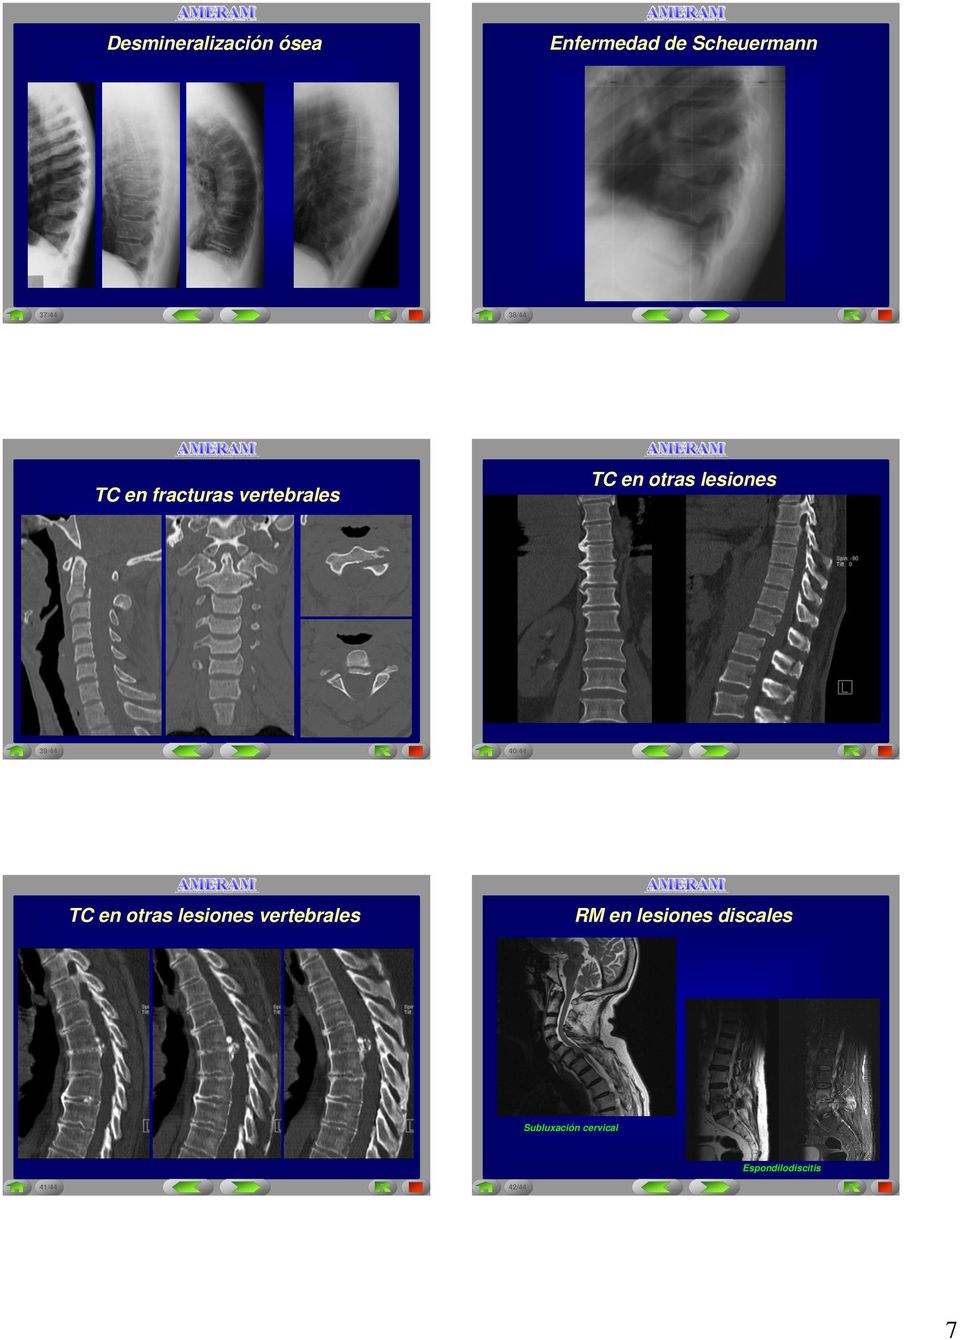 39/44 40/44 TC en otras lesiones vertebrales RM en